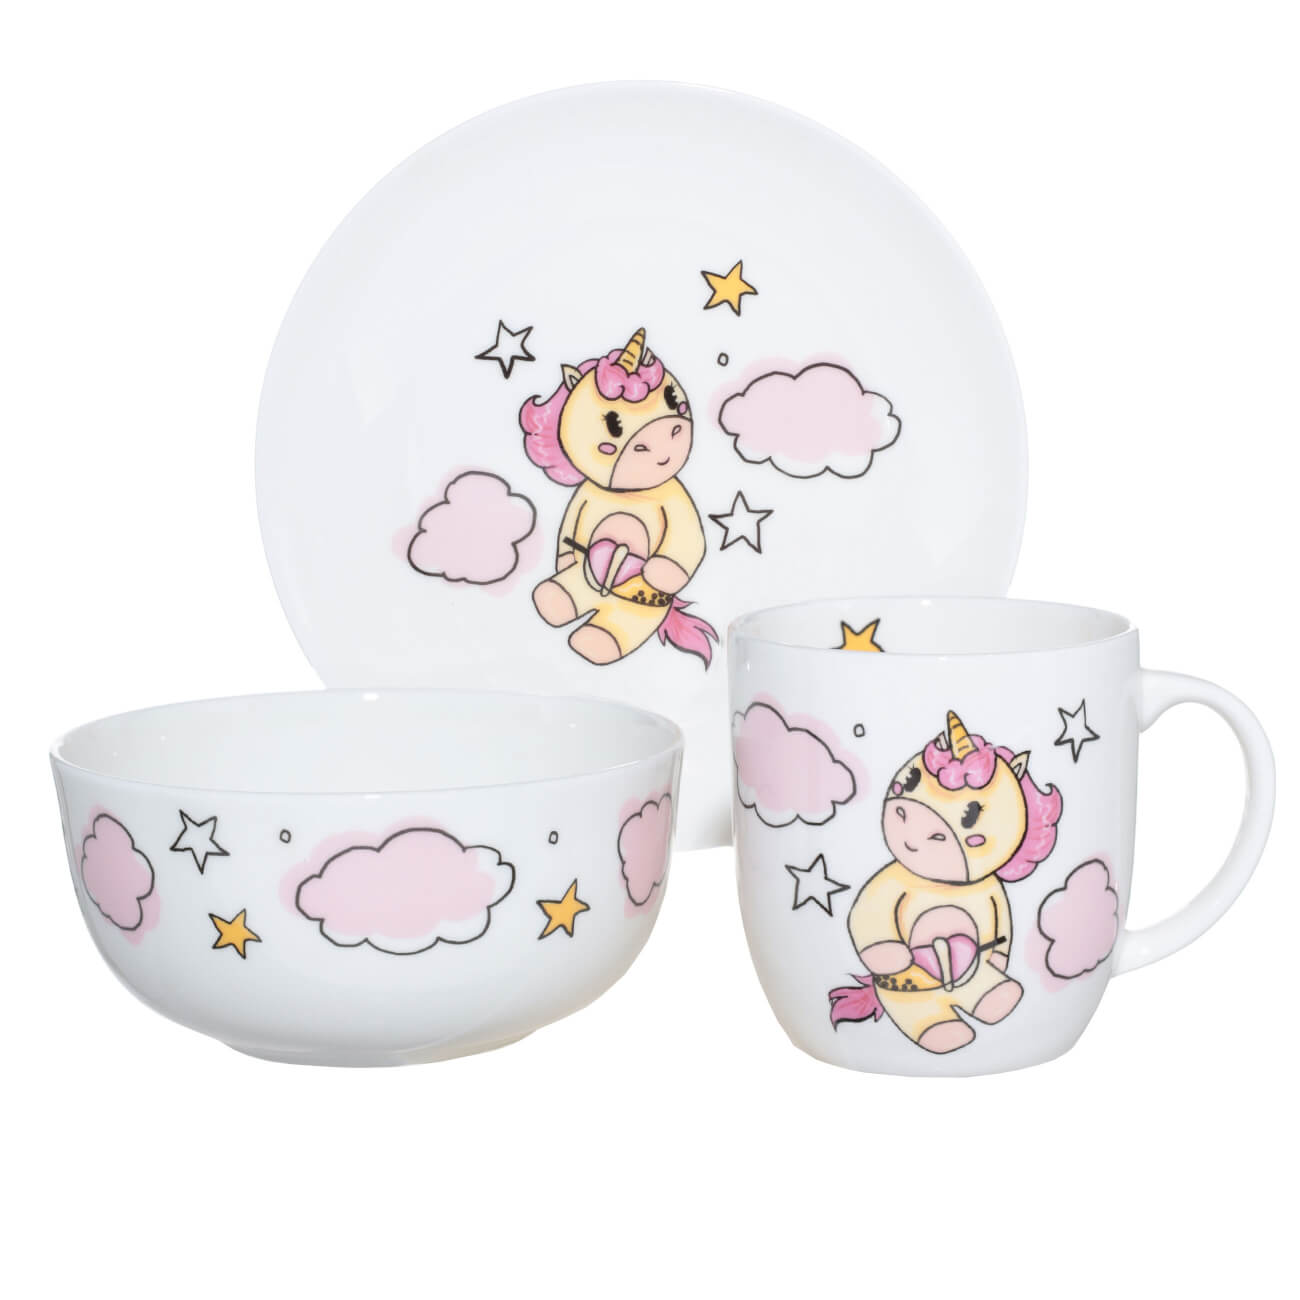 Набор посуды, детский, 3 пр, фарфор F, бело-розовый, Единорог в облаках, Unicorn изображение № 1